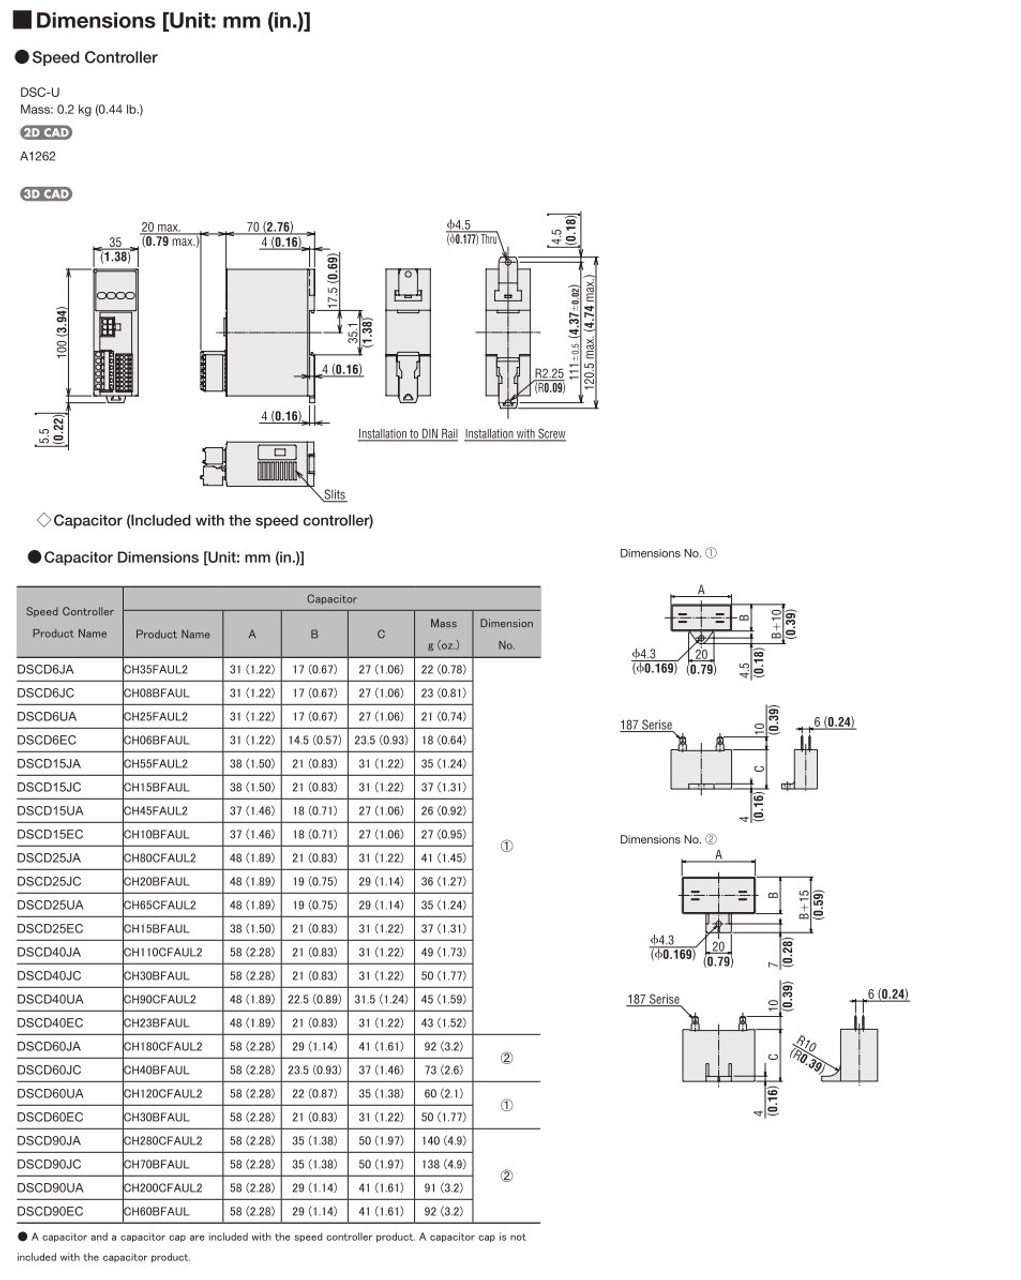 SCM425EC-100 / DSCD25EC - Dimensions